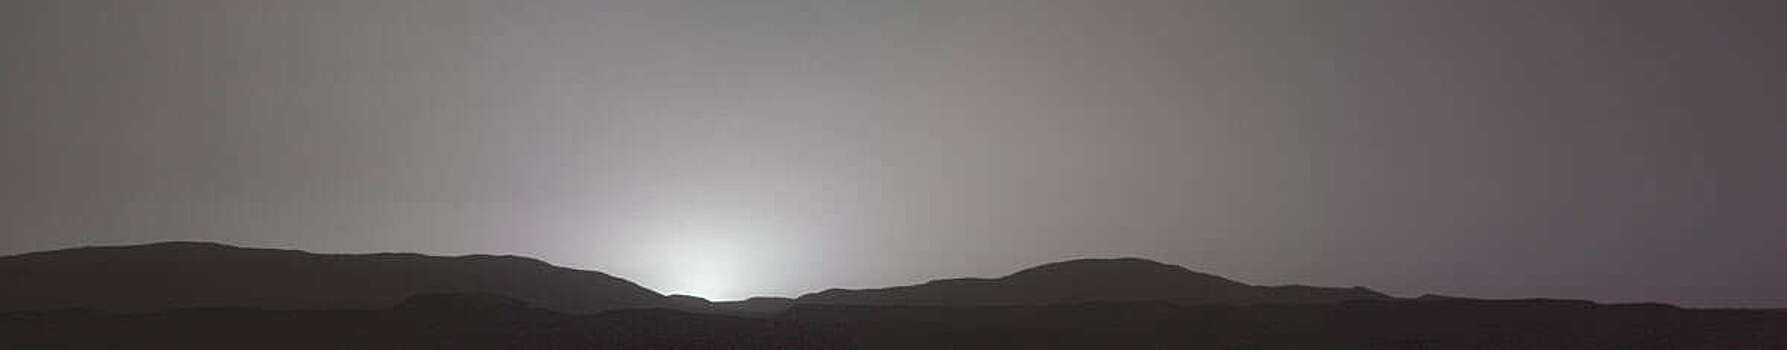 Марс, марсоход Perseverance: Взгляд в небо